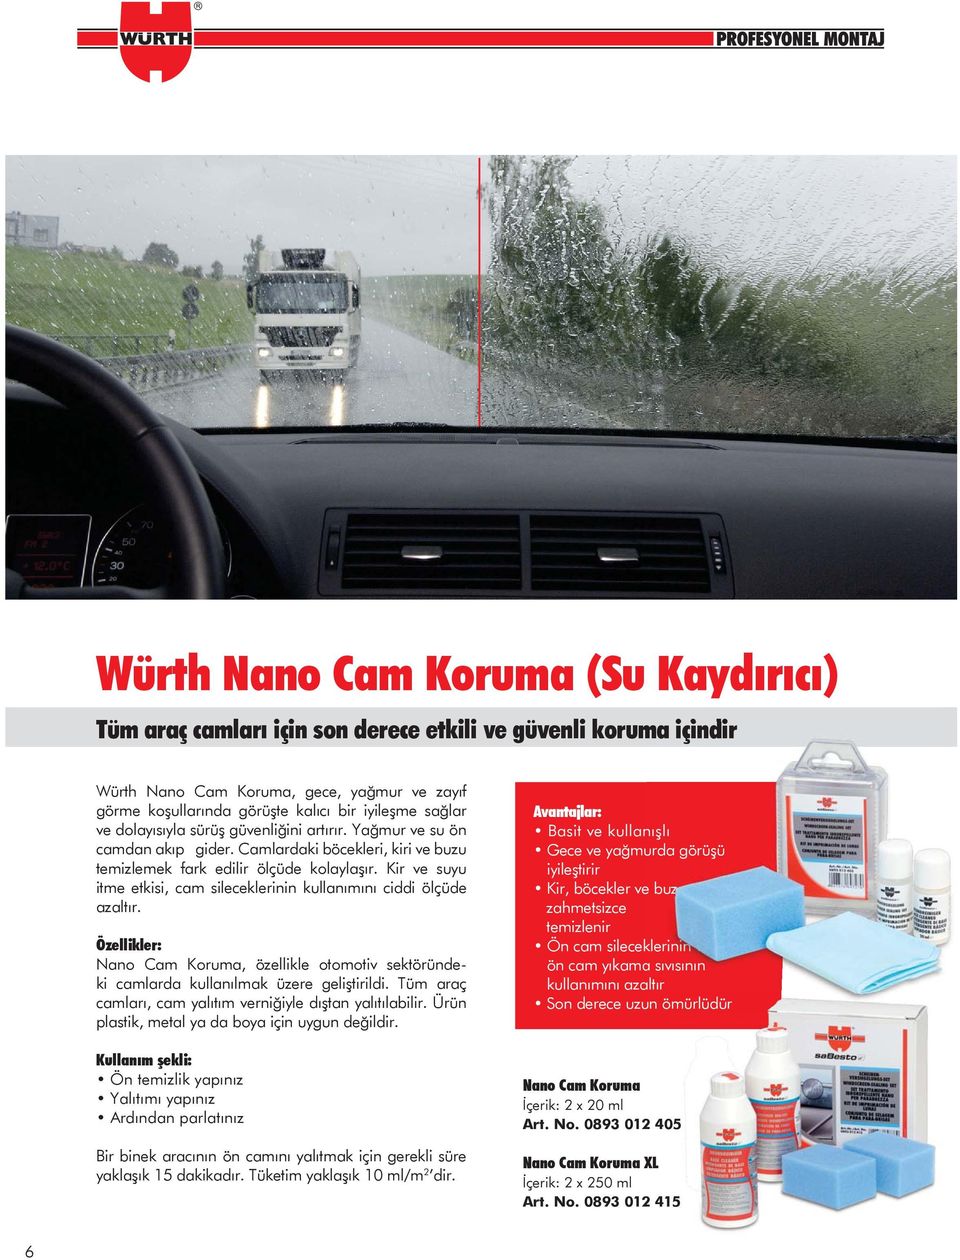 Kir ve suyu itme etkisi, cam sileceklerinin kullanımını ciddi ölçüde azaltır. Nano Cam Koruma, özellikle otomotiv sektöründeki camlarda kullanılmak üzere geliştirildi.